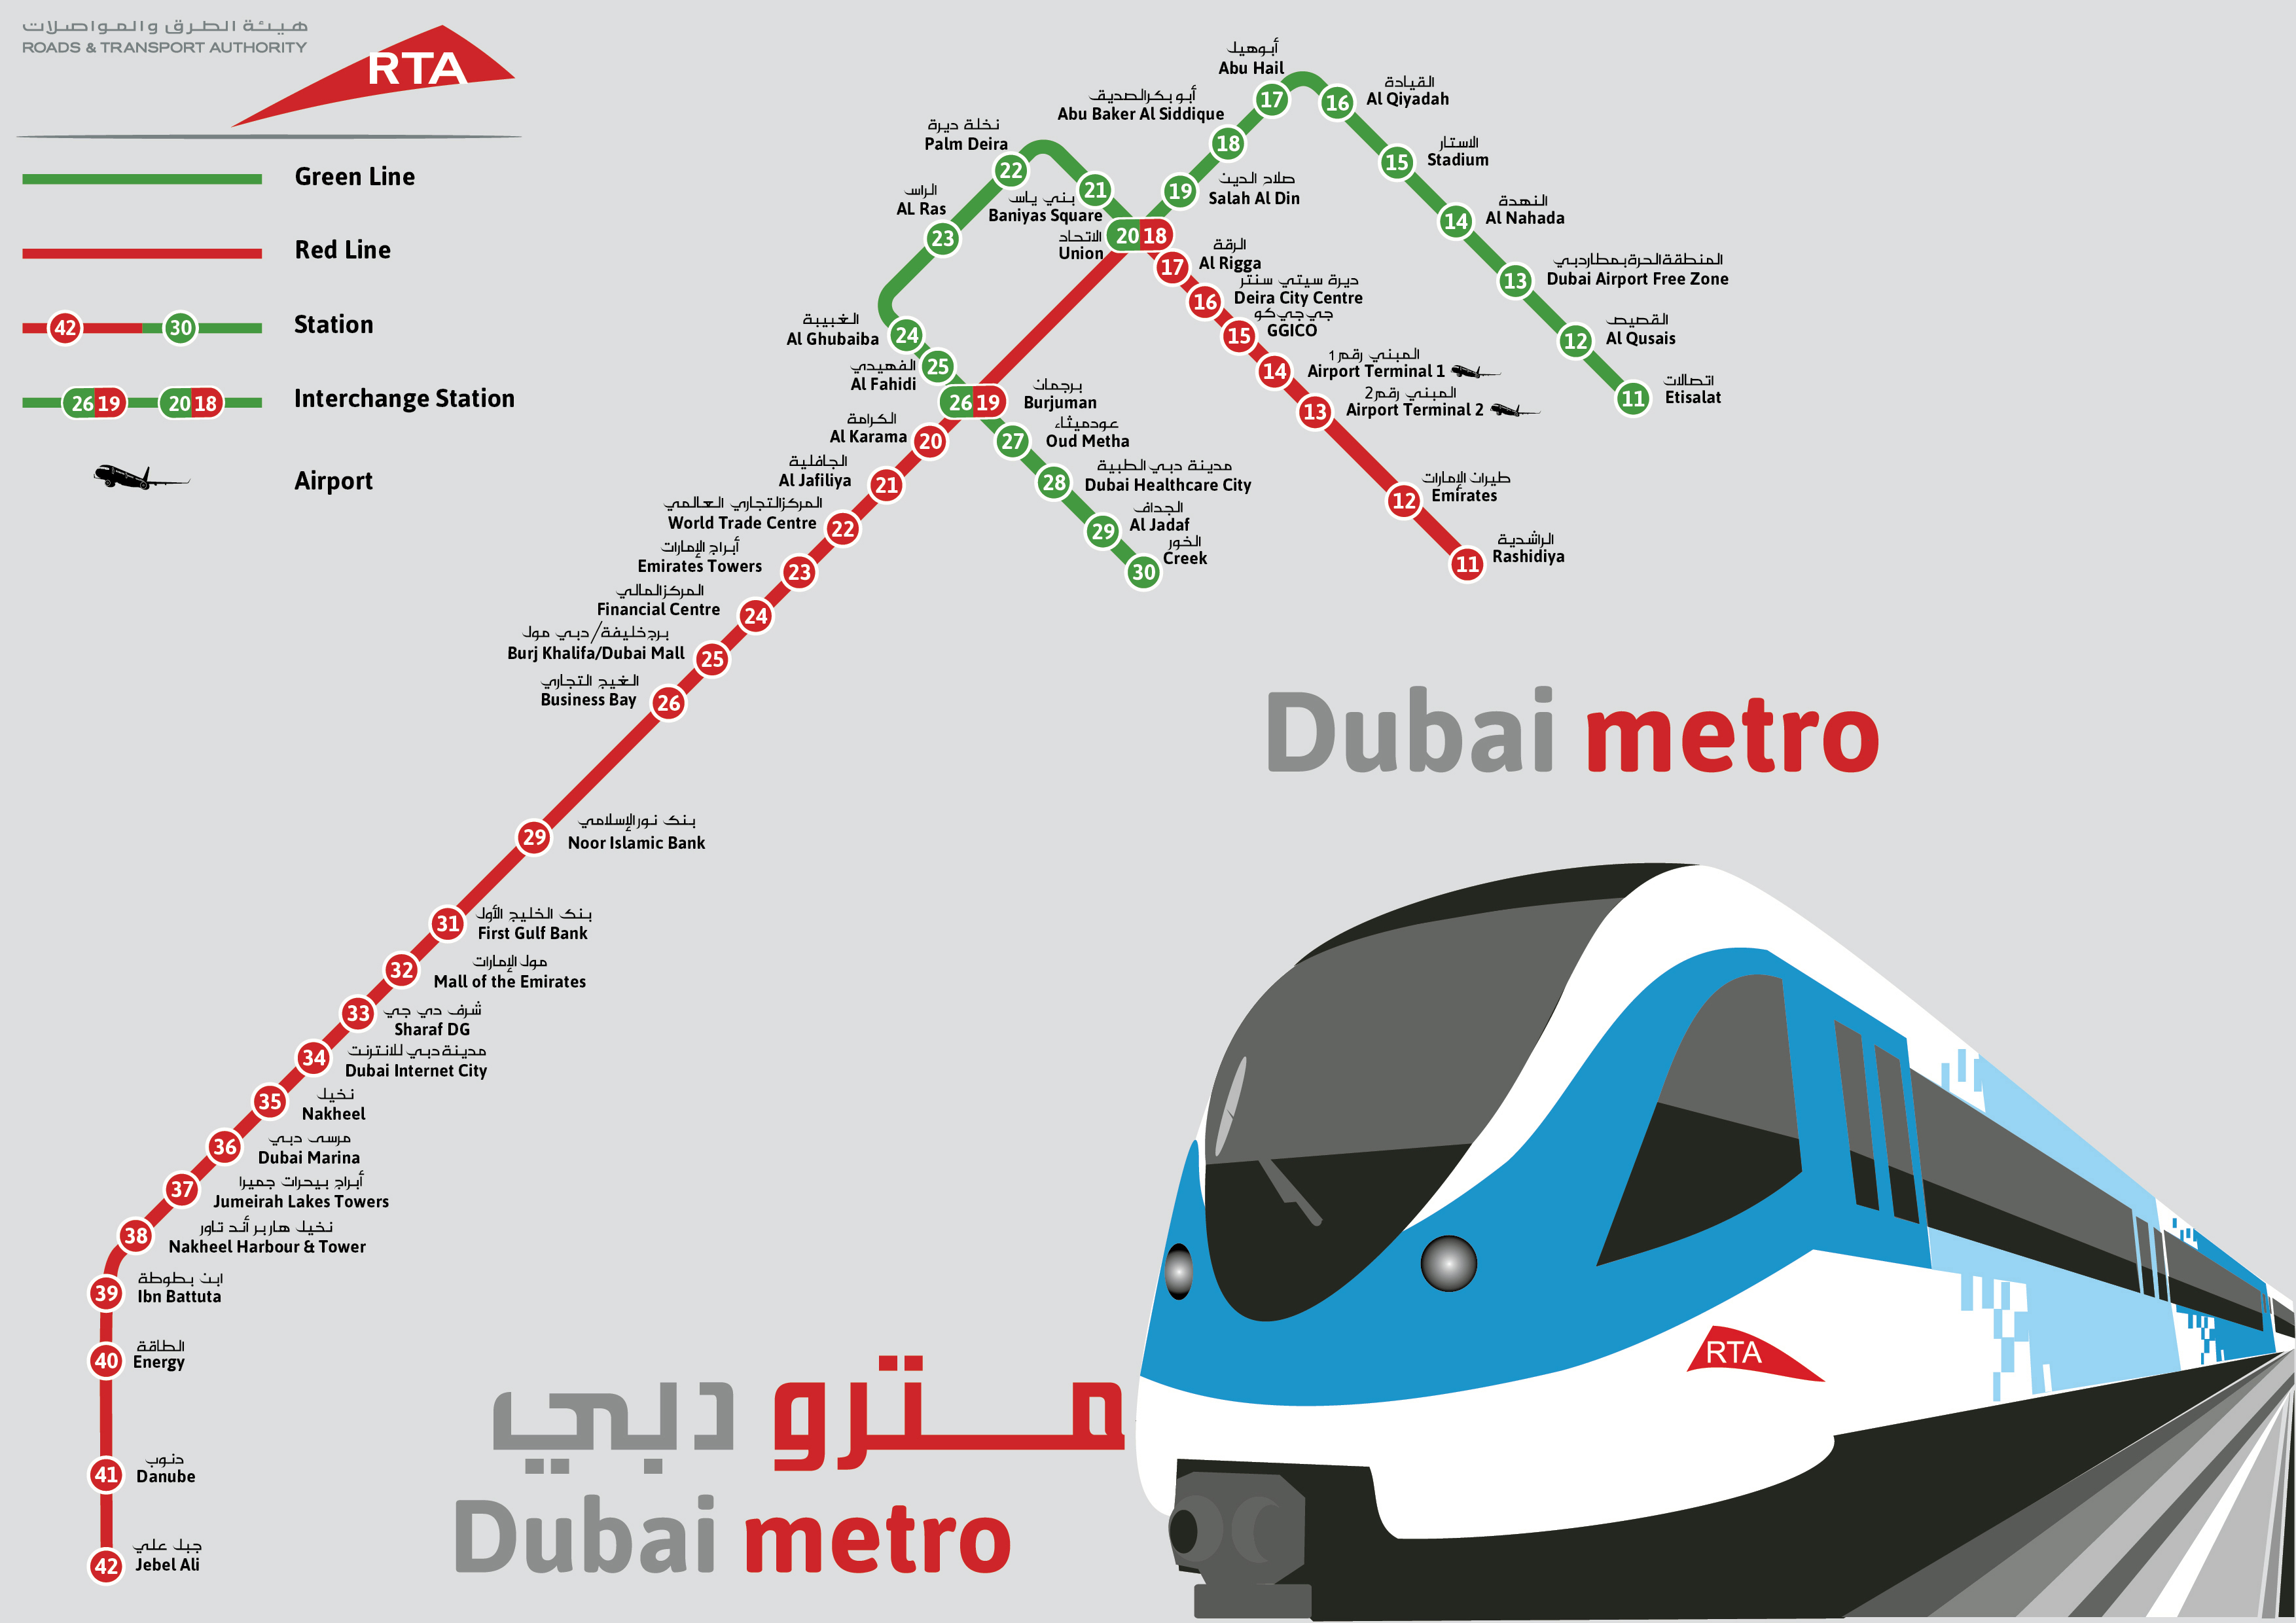 dubai tourist places by metro